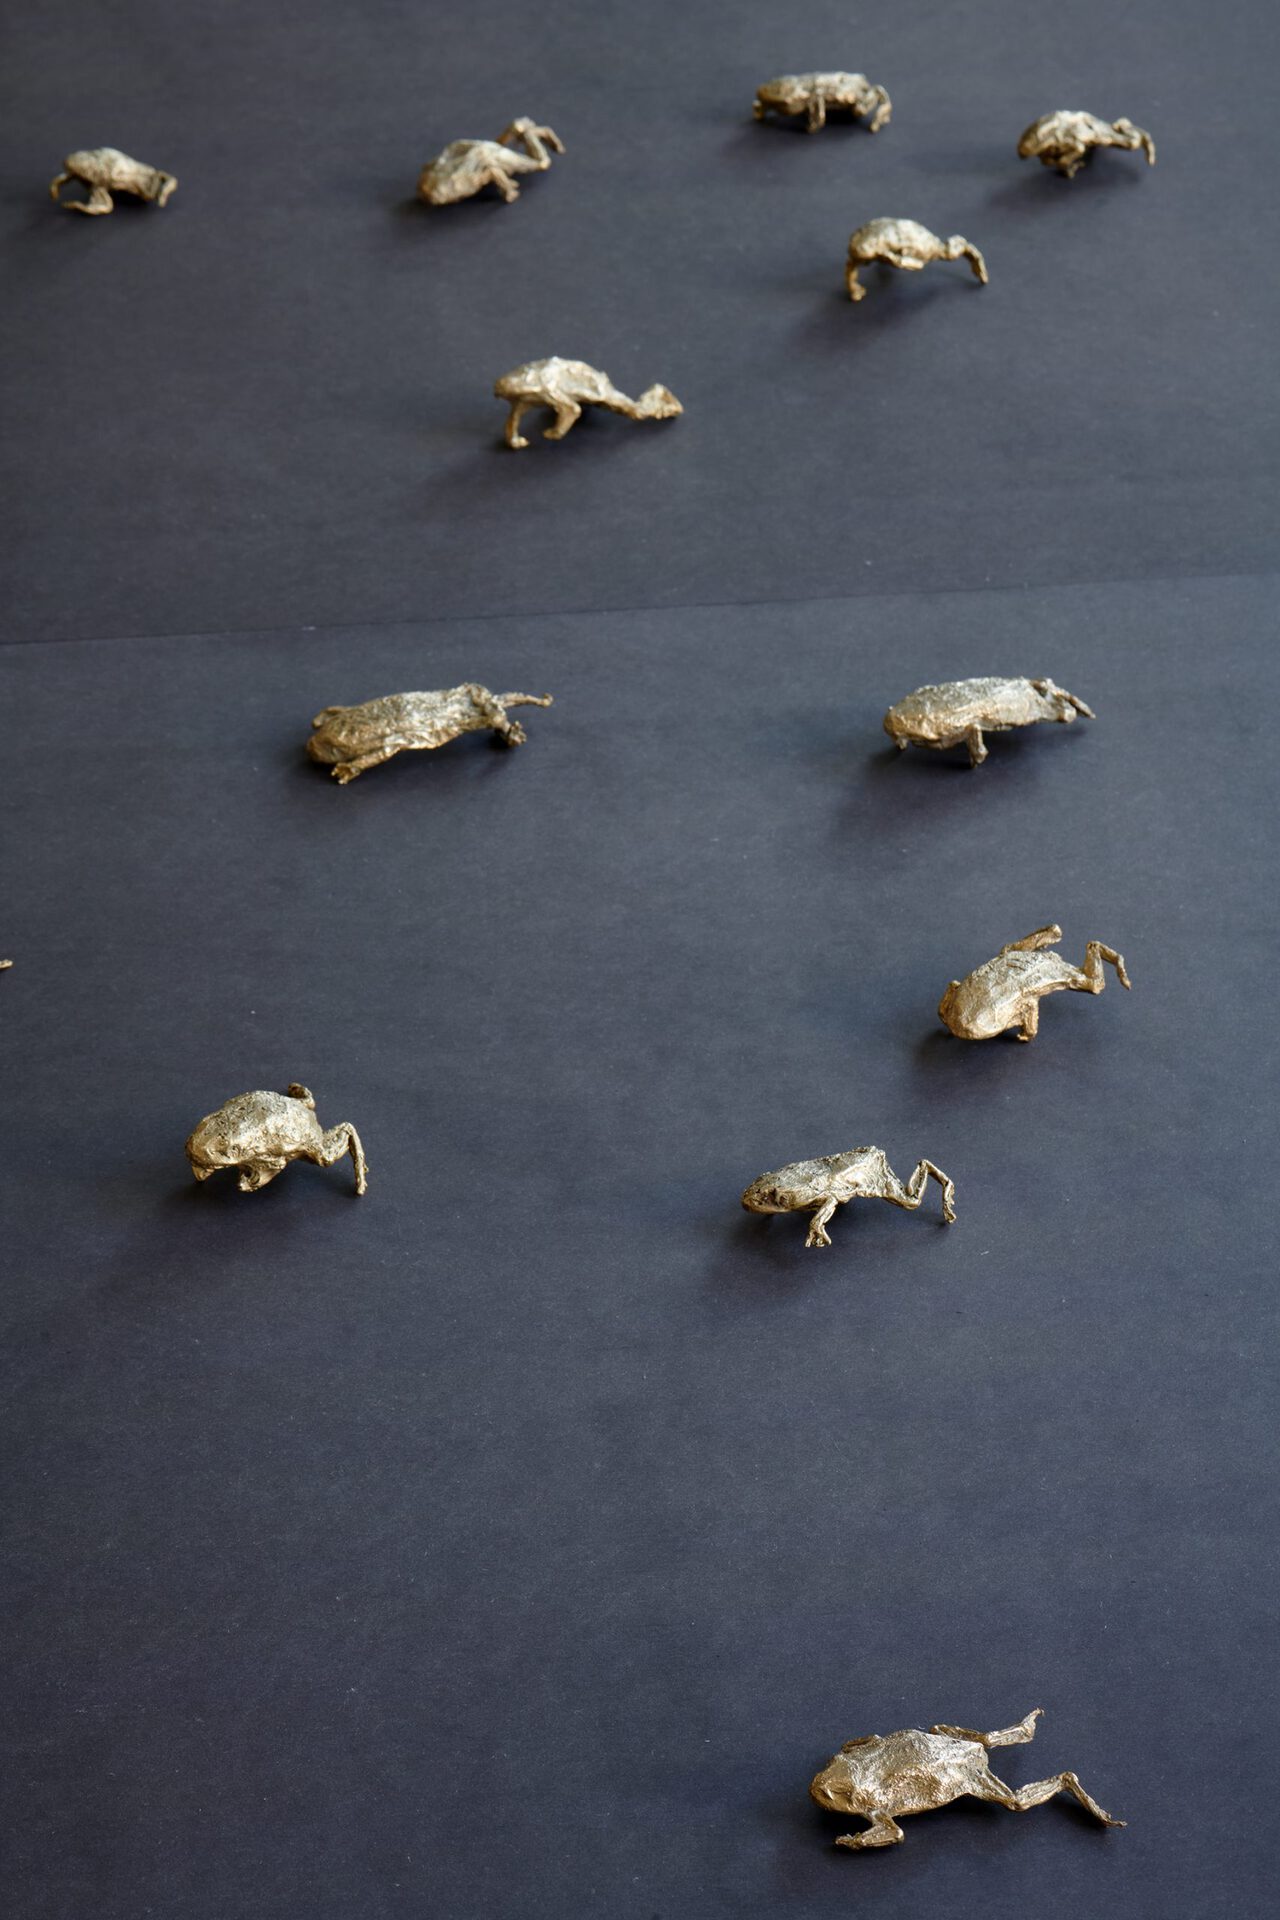 Dunja Herzog, Army of Frogs, 2018-2020, Detail, Installation view, Kölnischer Kunstverein, 2020, Photo: Mareike Tocha, Courtesy: the artist